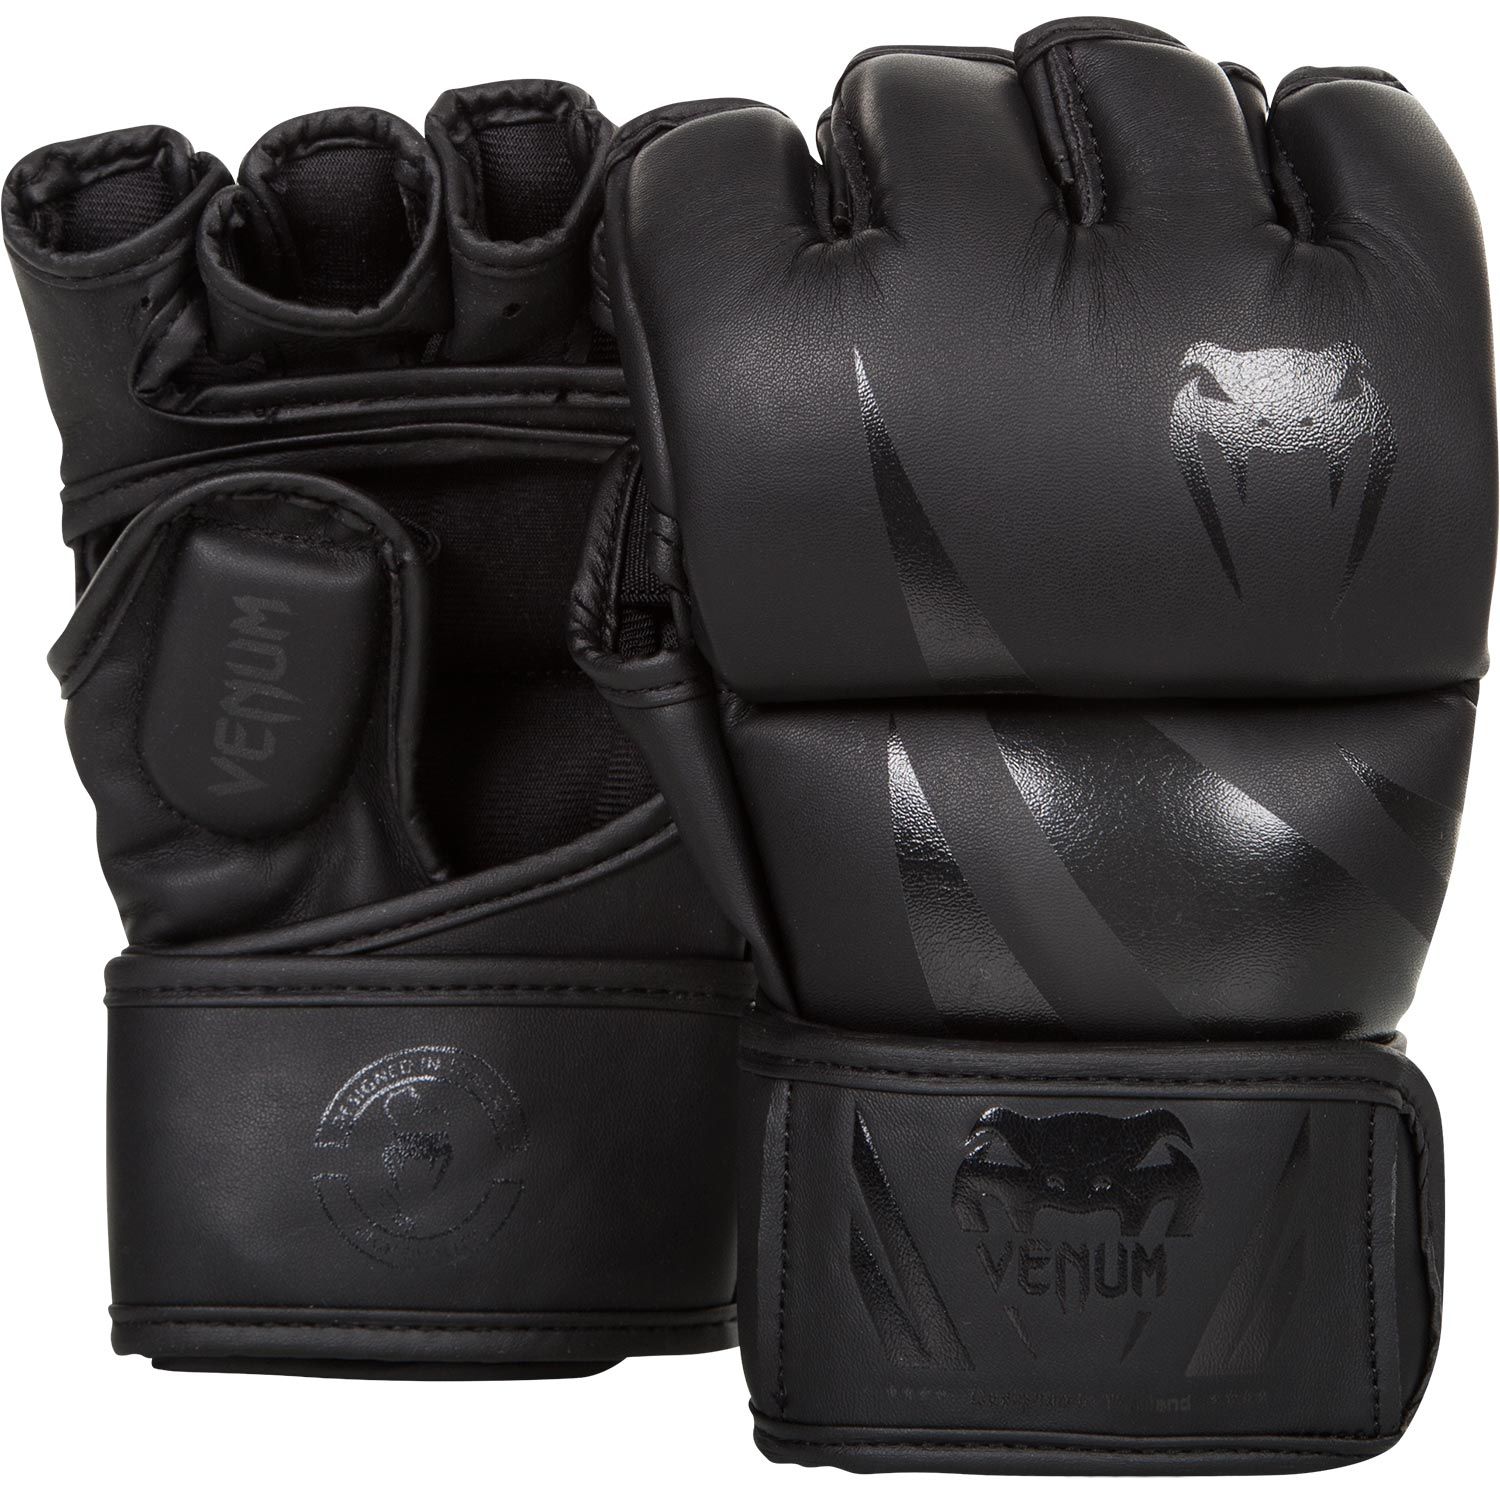 MMA rukavice Challenger matně černé VENUM vel. L/XL